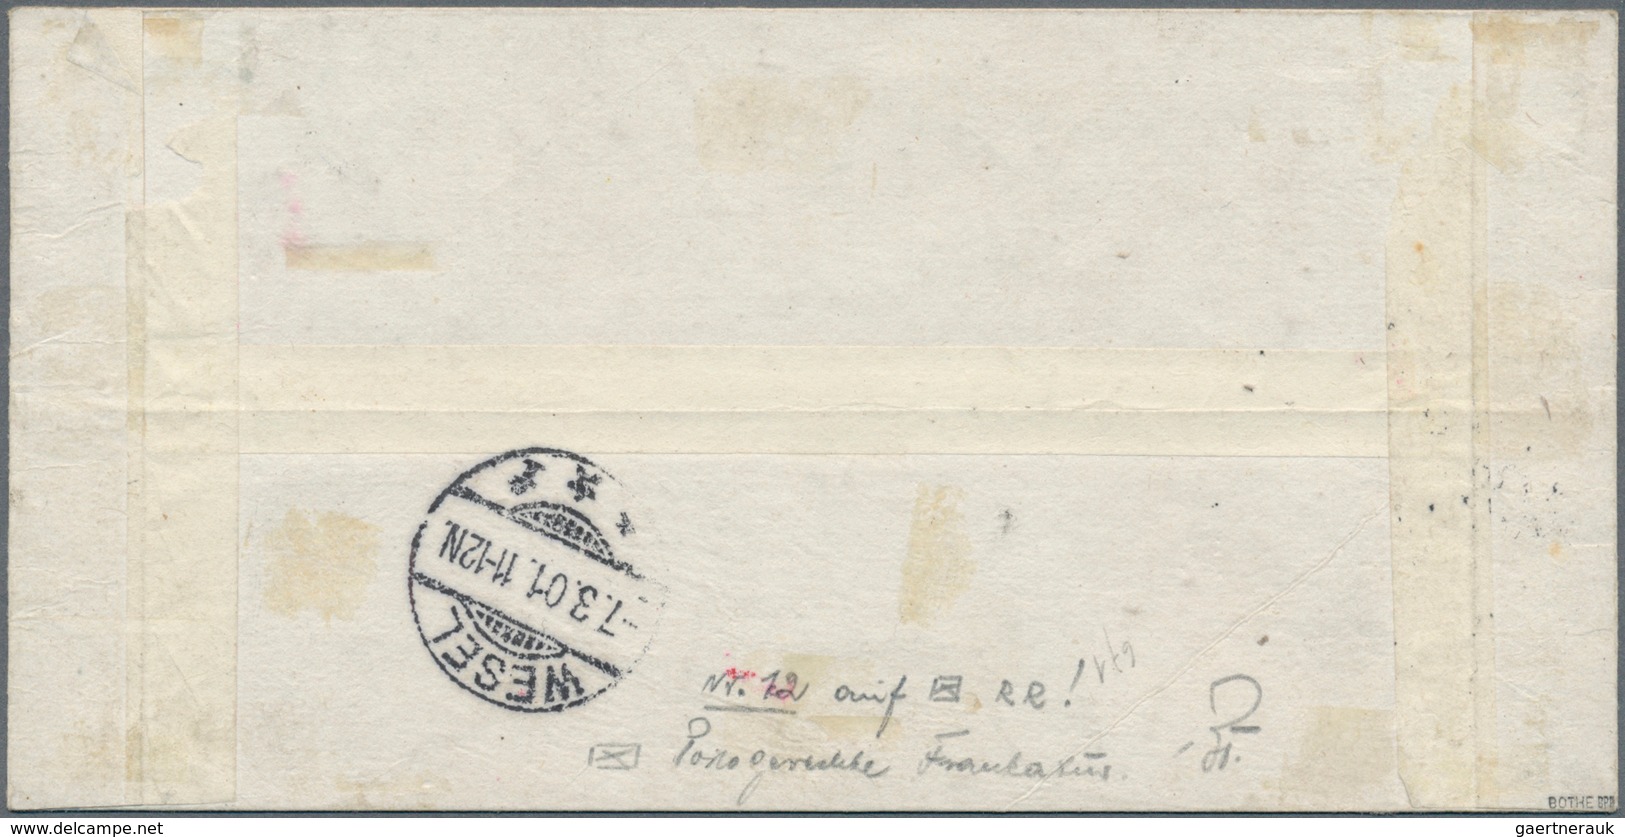 01287 Deutsche Post In China: 1900: 30 Pfg. Germania Orange/schwarz Auf Lachsfarben, Tientsin-Handstempela - Deutsche Post In China